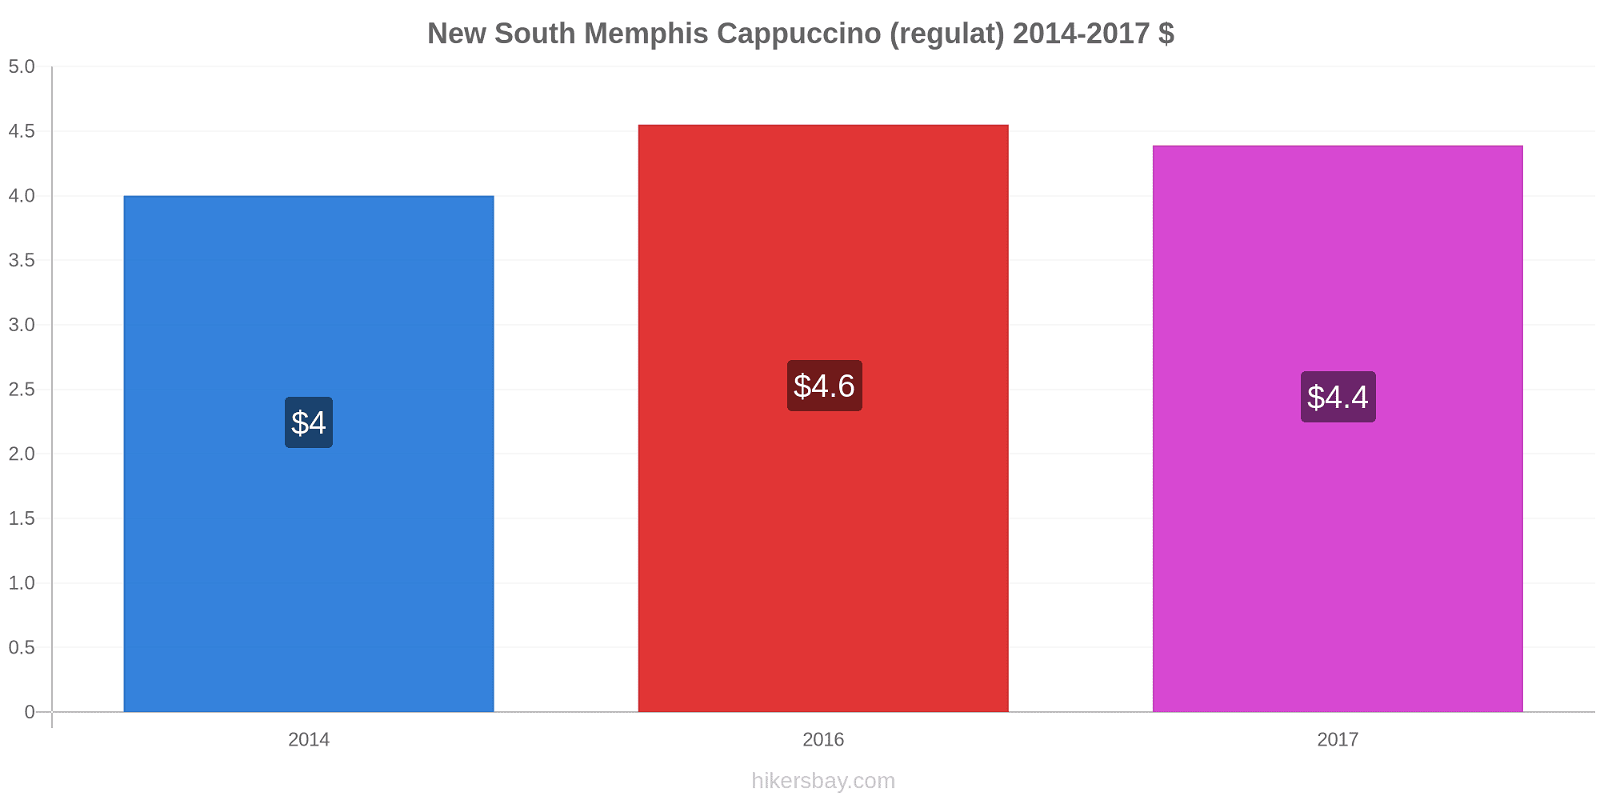 New South Memphis modificări de preț Cappuccino (regulat) hikersbay.com